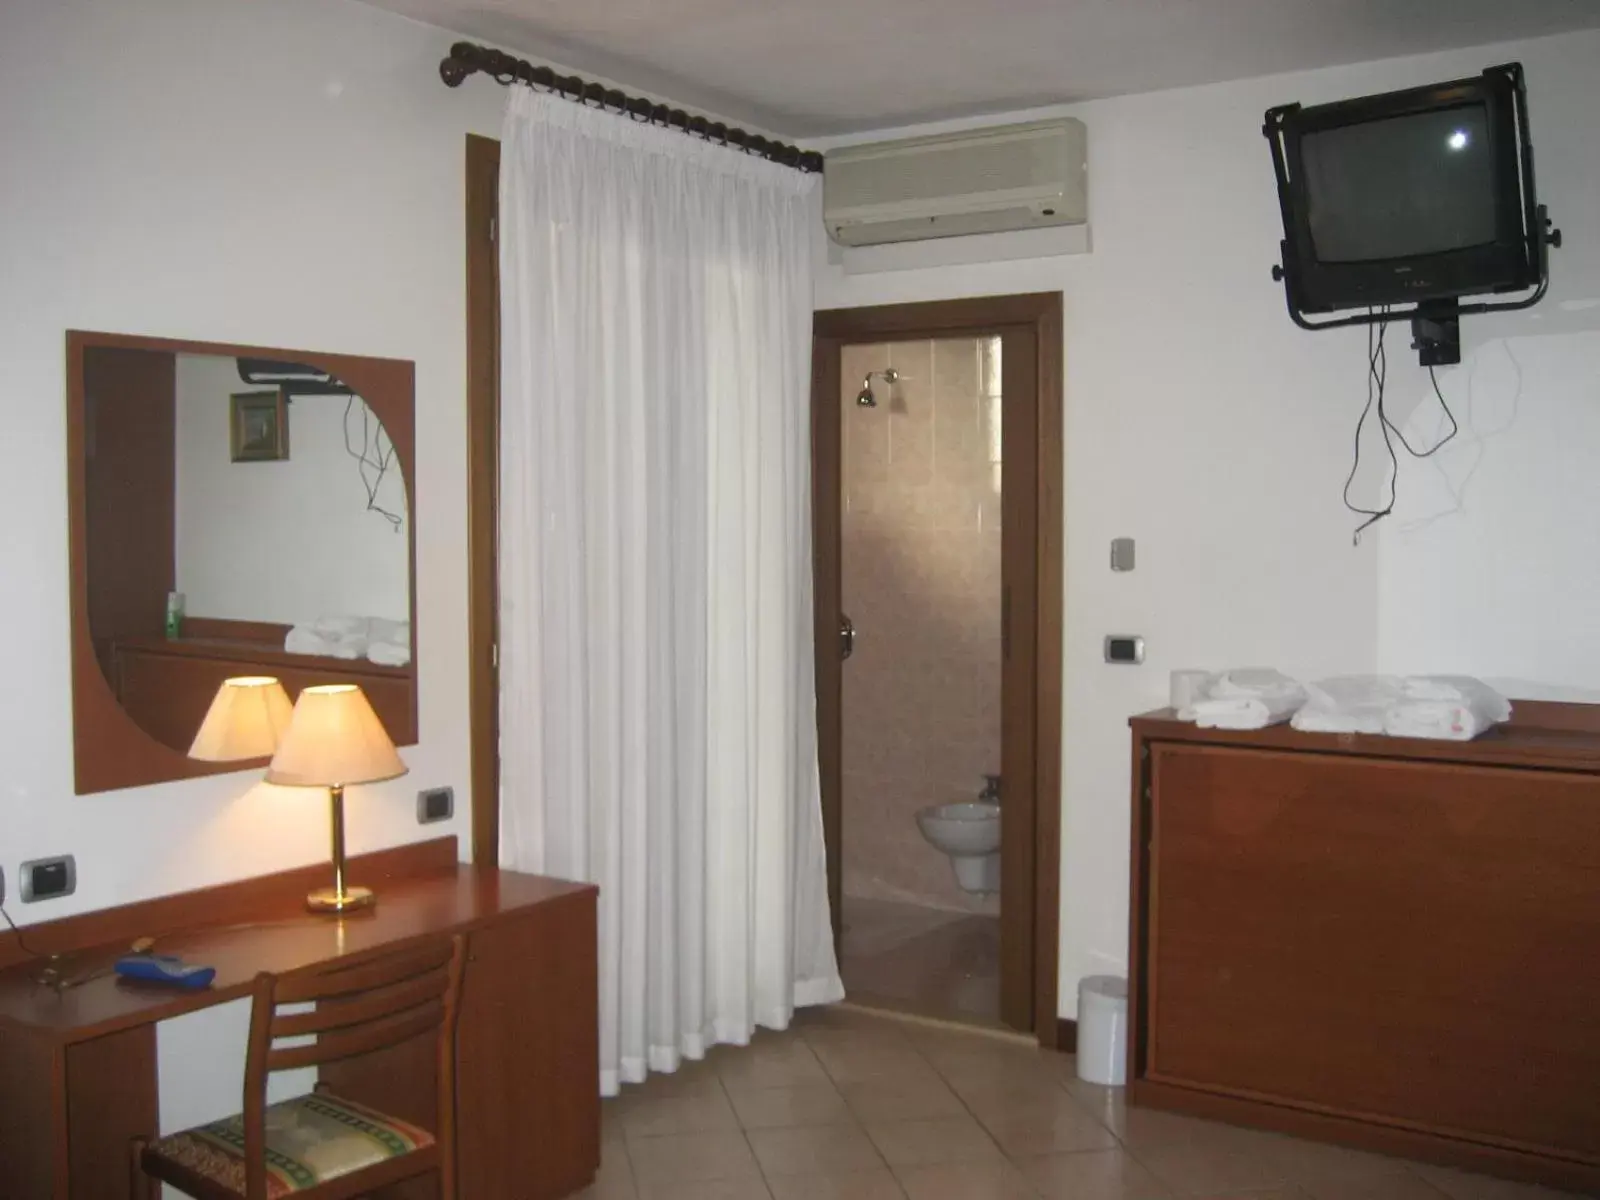 Bedroom, TV/Entertainment Center in Hotel Pizzeria Ristorante "Al Leone"